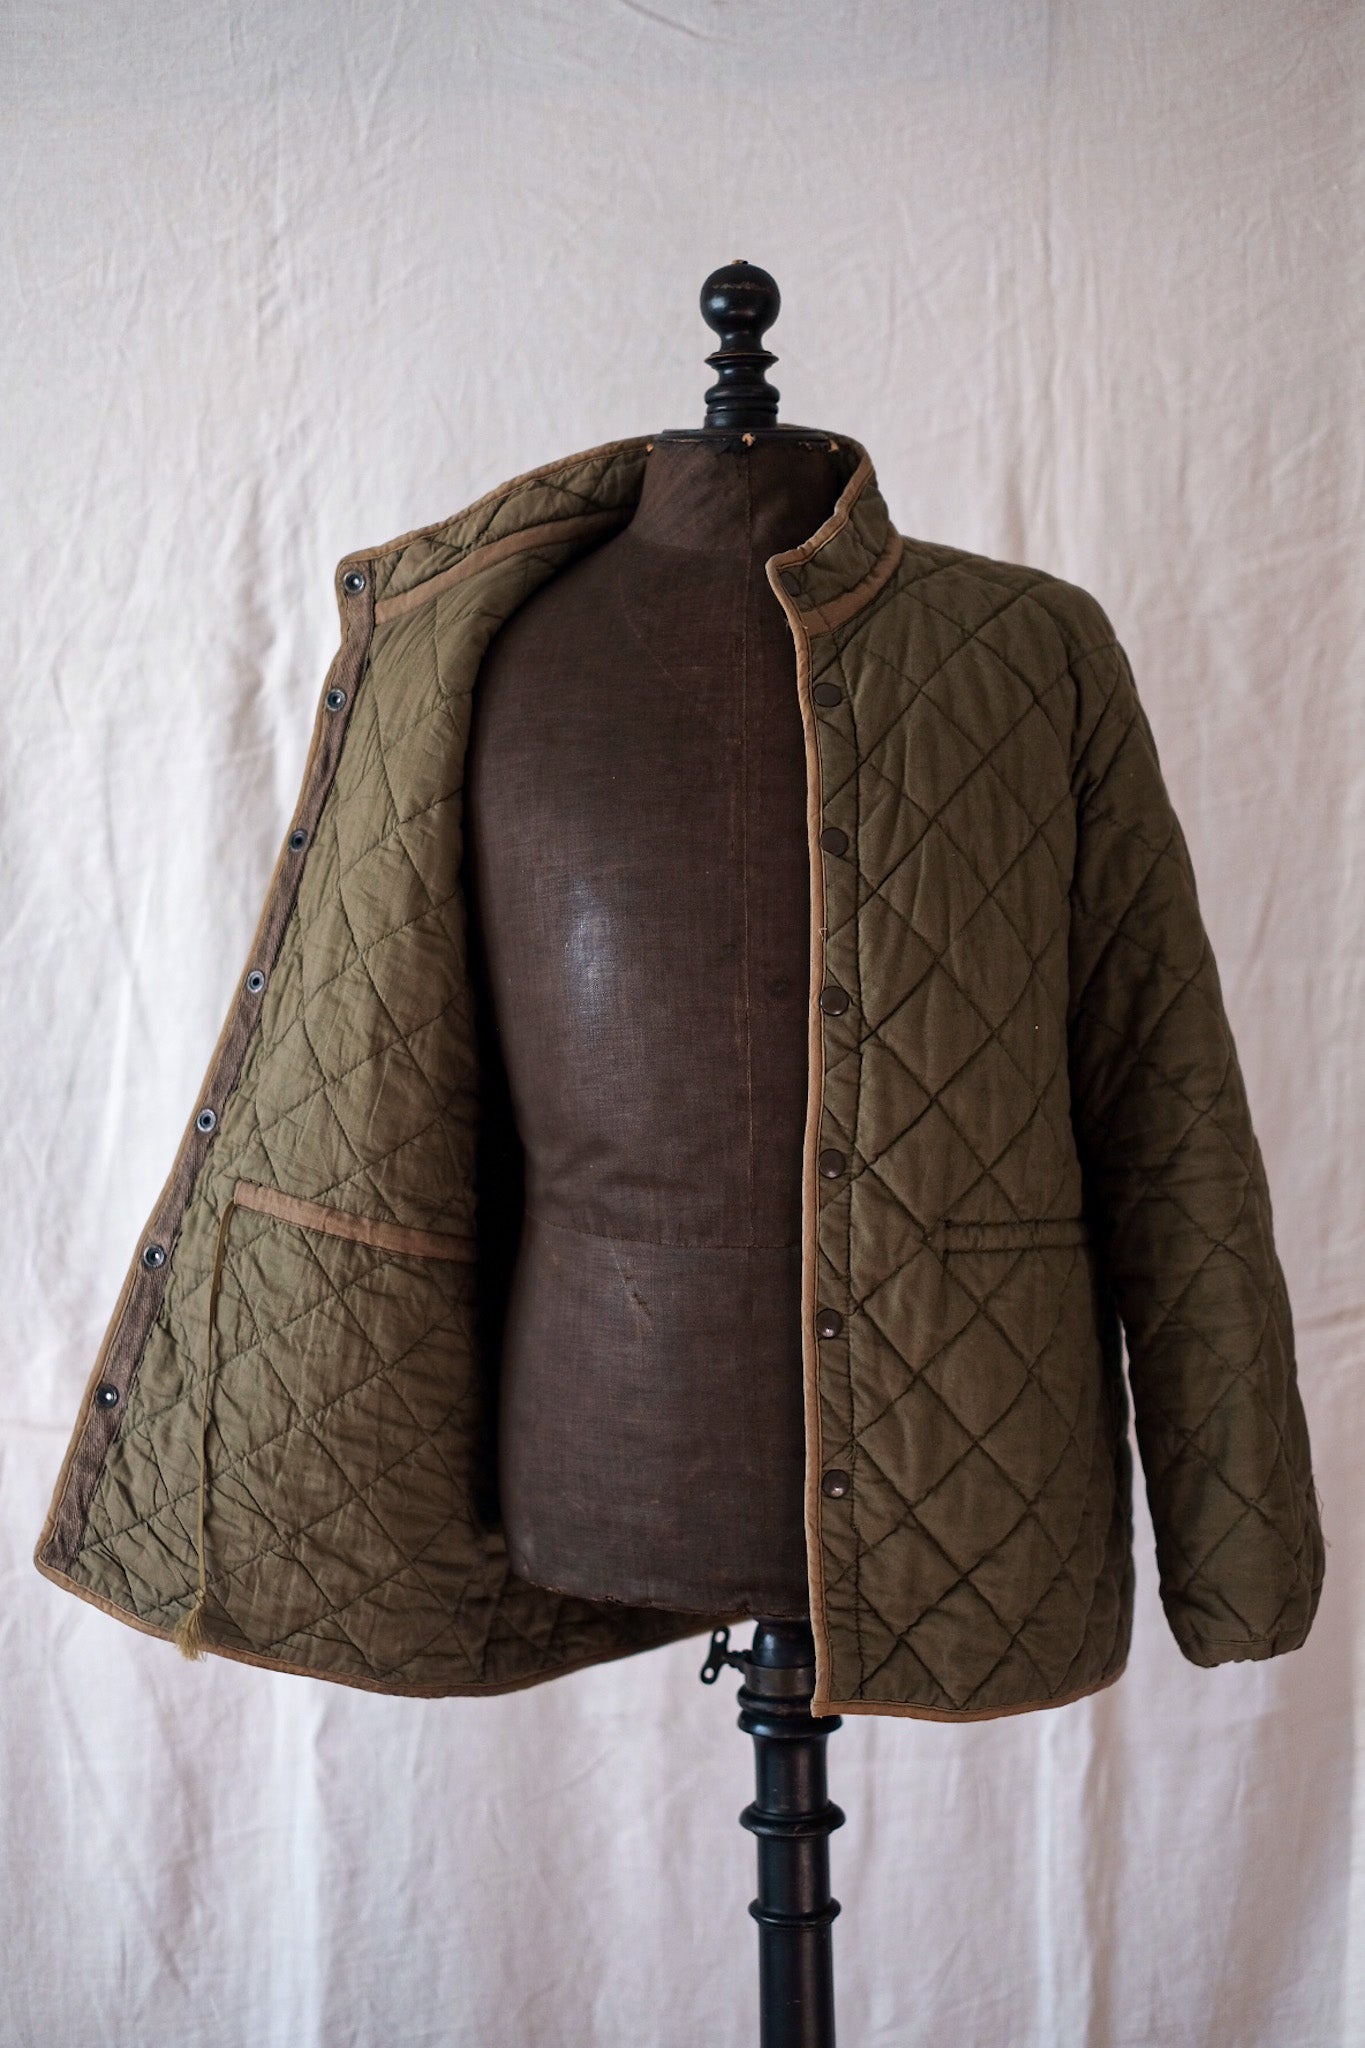 [〜50年代]法國軍隊縫的襯裡夾克